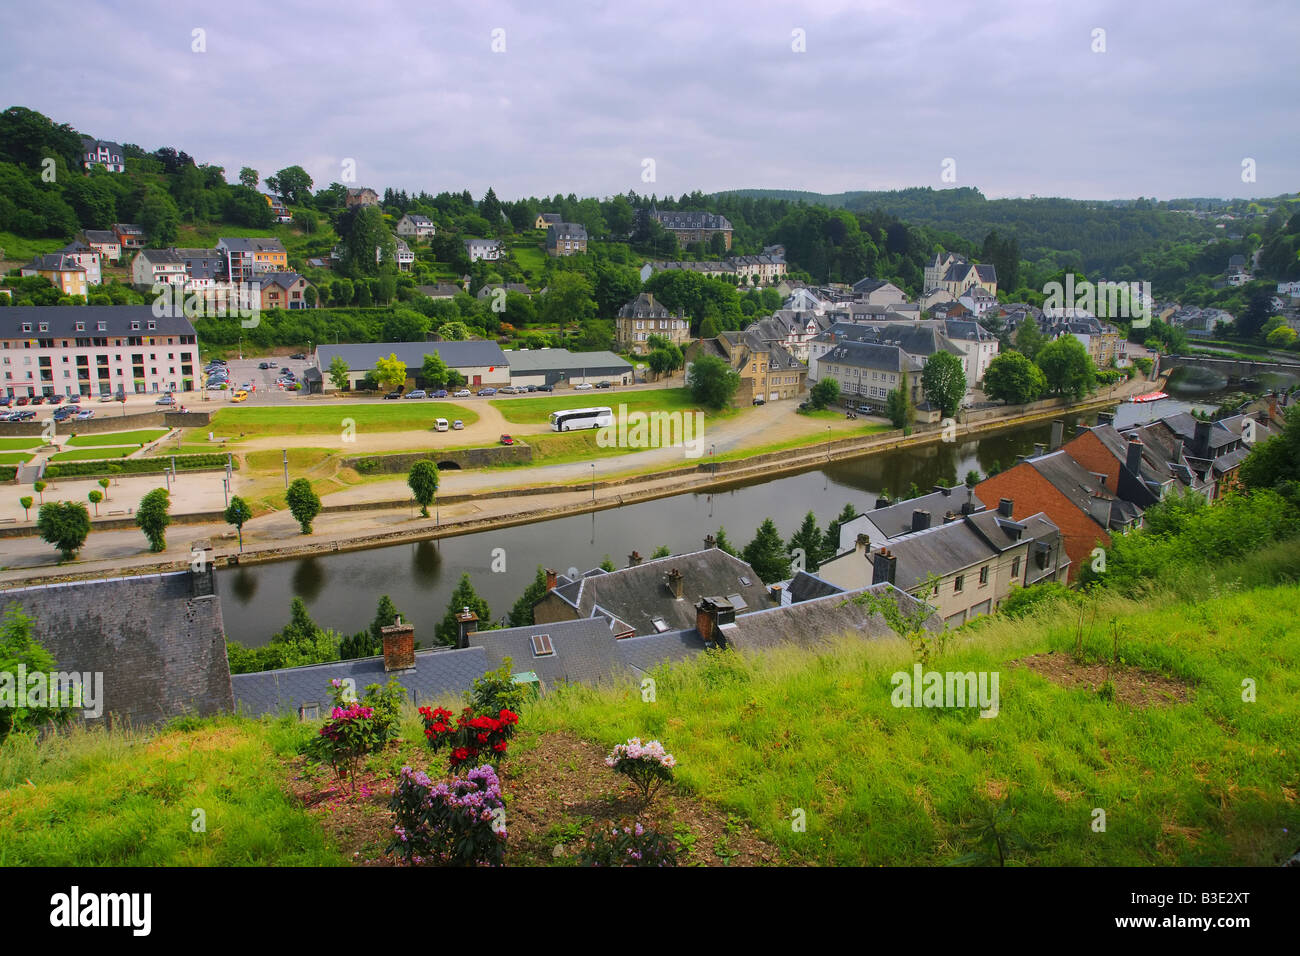 France/Belgique. Une ville située sur la rivière Muese (Maas). Banque D'Images